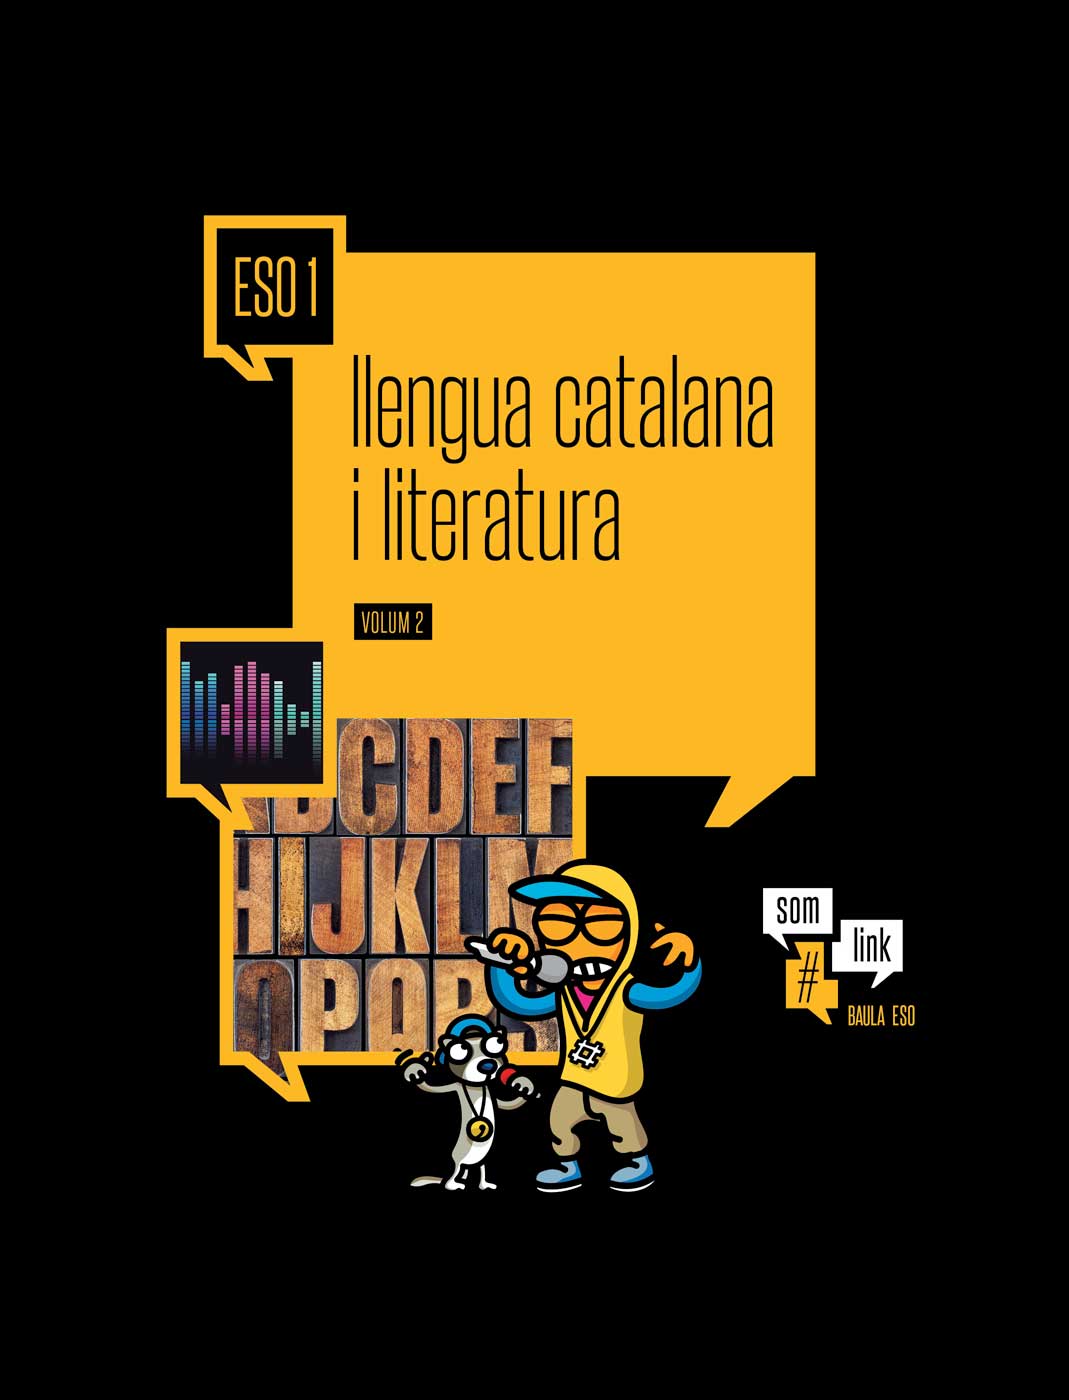 9788441223899 Llengua catalana i literatura 1 ESO Atòmium